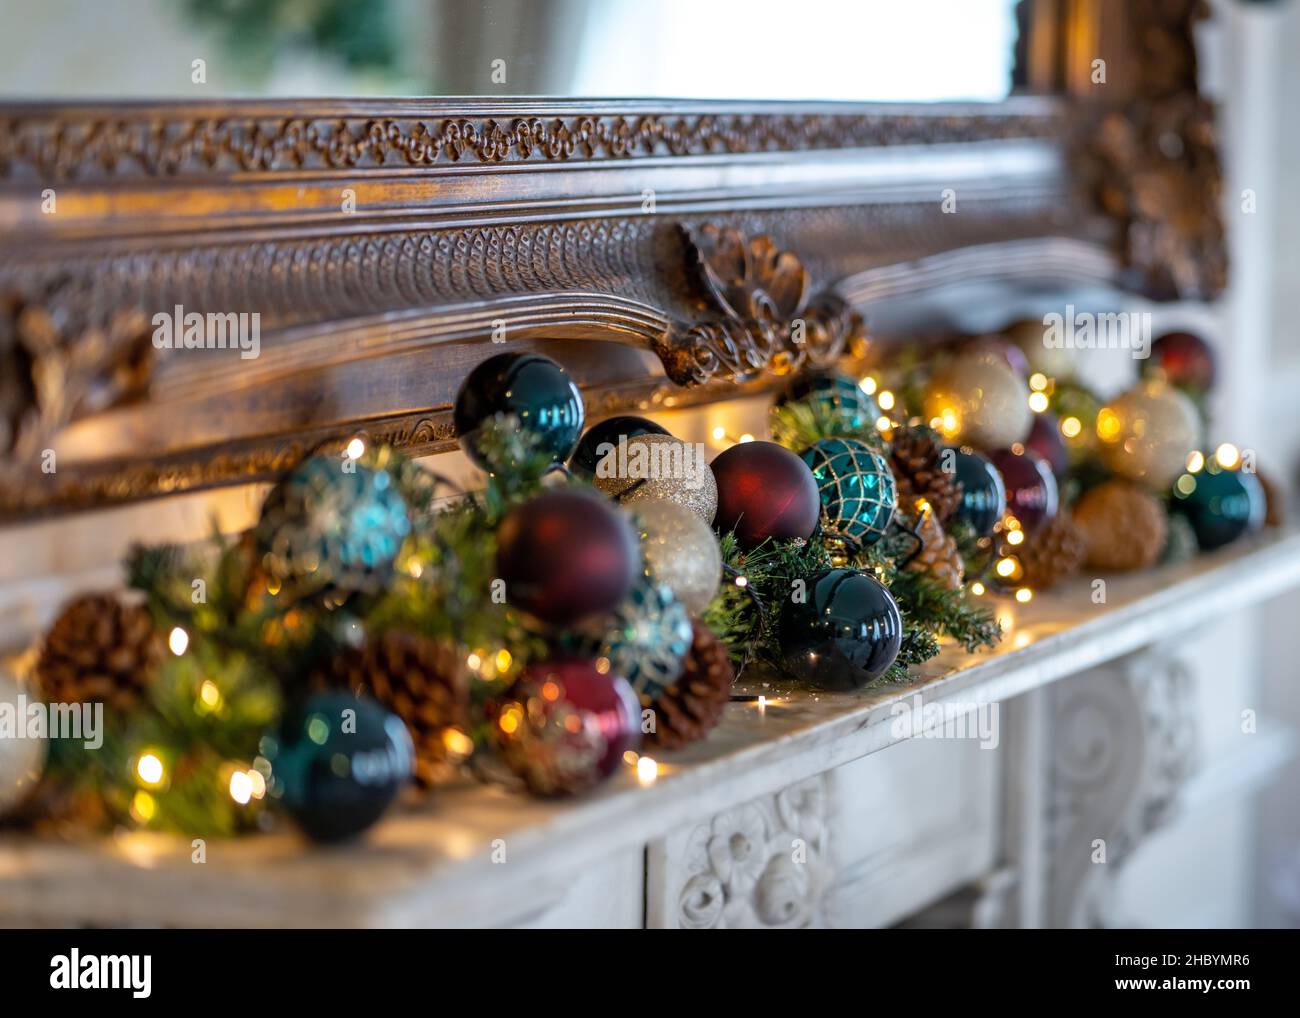 Belle decorazioni natalizie tradizionali e luci rosso baubles pino abete rami su fregio. Accesa con luci natalizie per la stagione delle feste Foto Stock